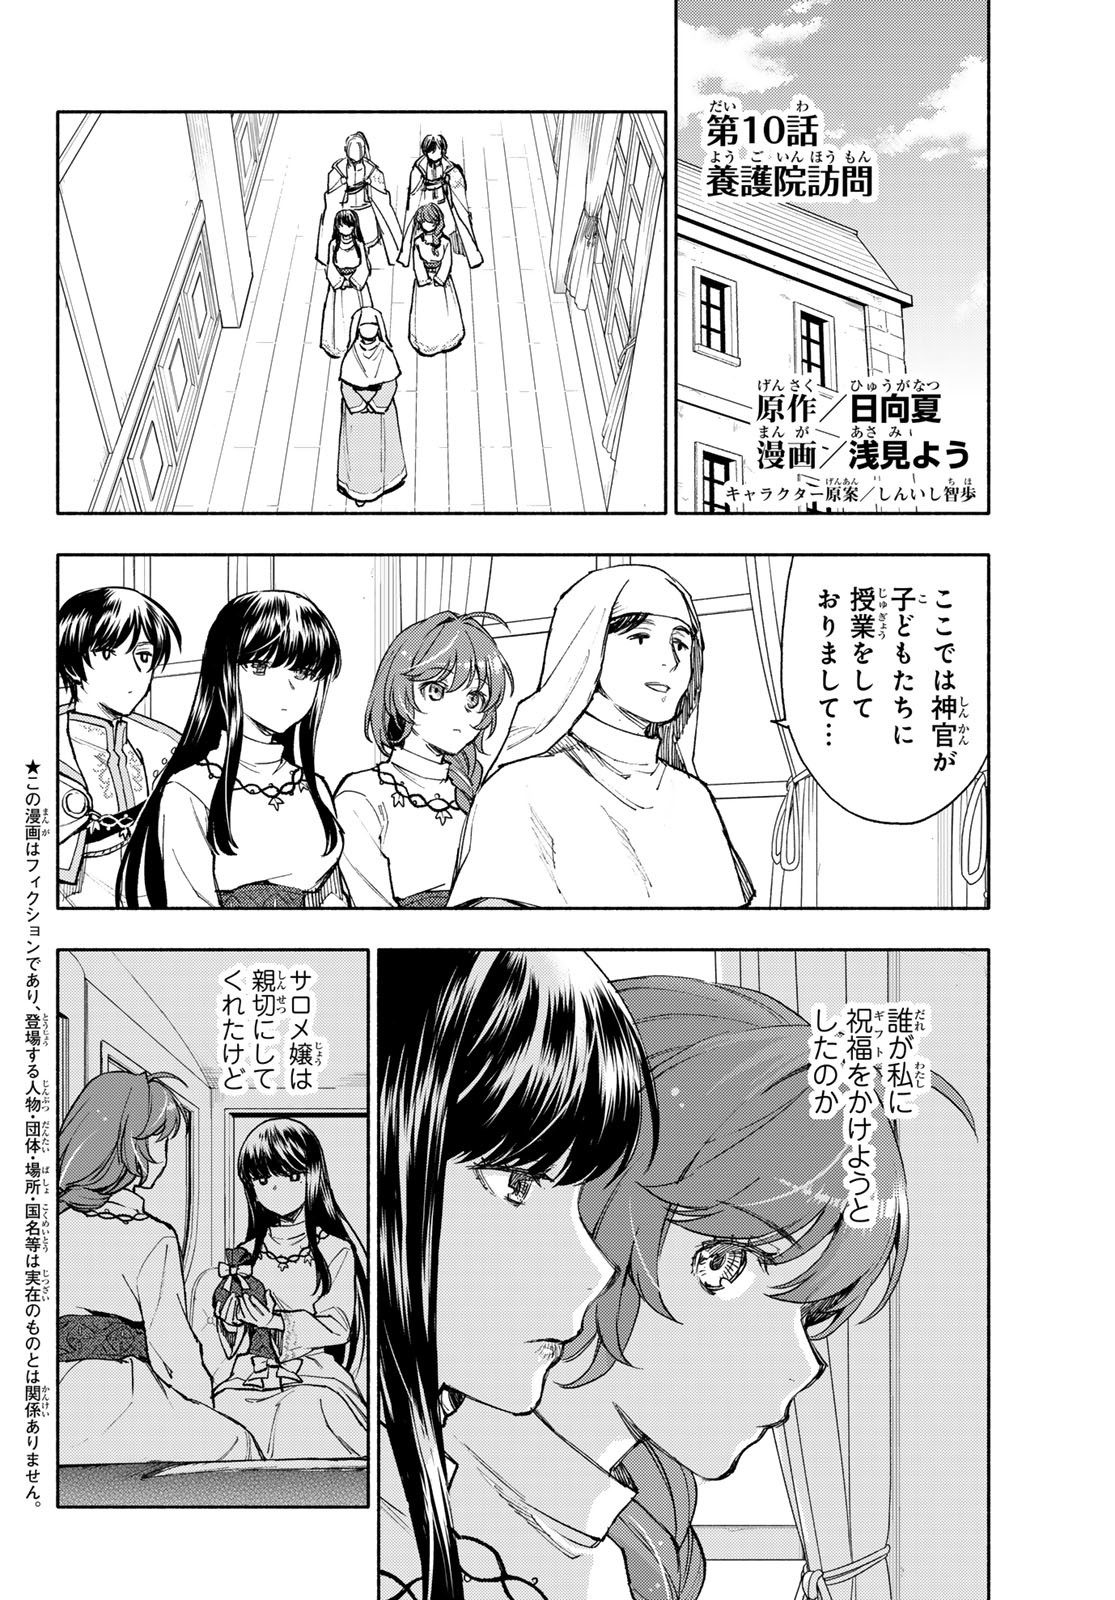 Seijo ni Uso wa Tsuujinai - Chapter 10 - Page 2